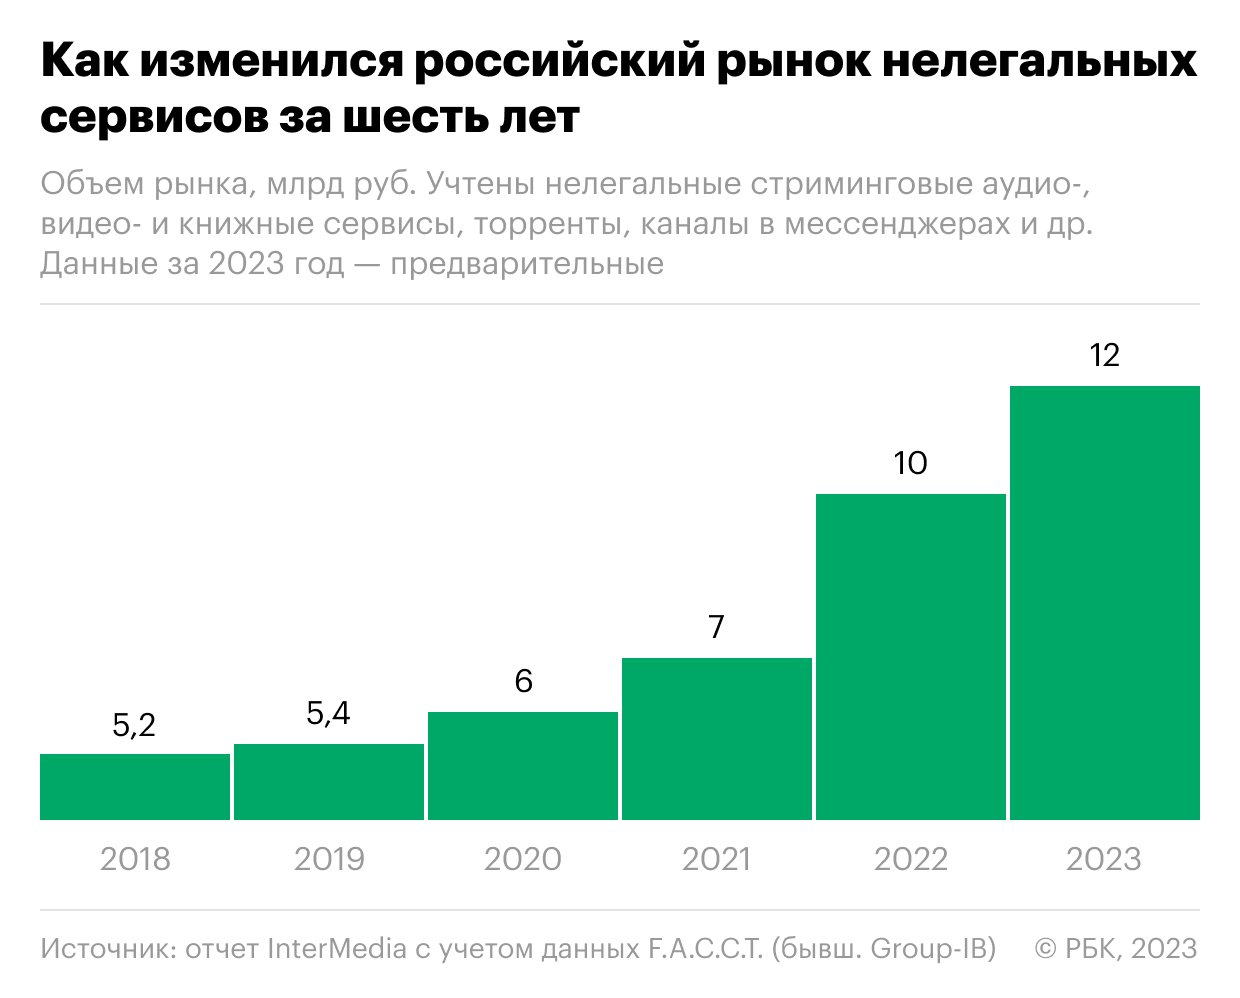 Как вырос в России рынок нелегальных сервисов. Инфографика